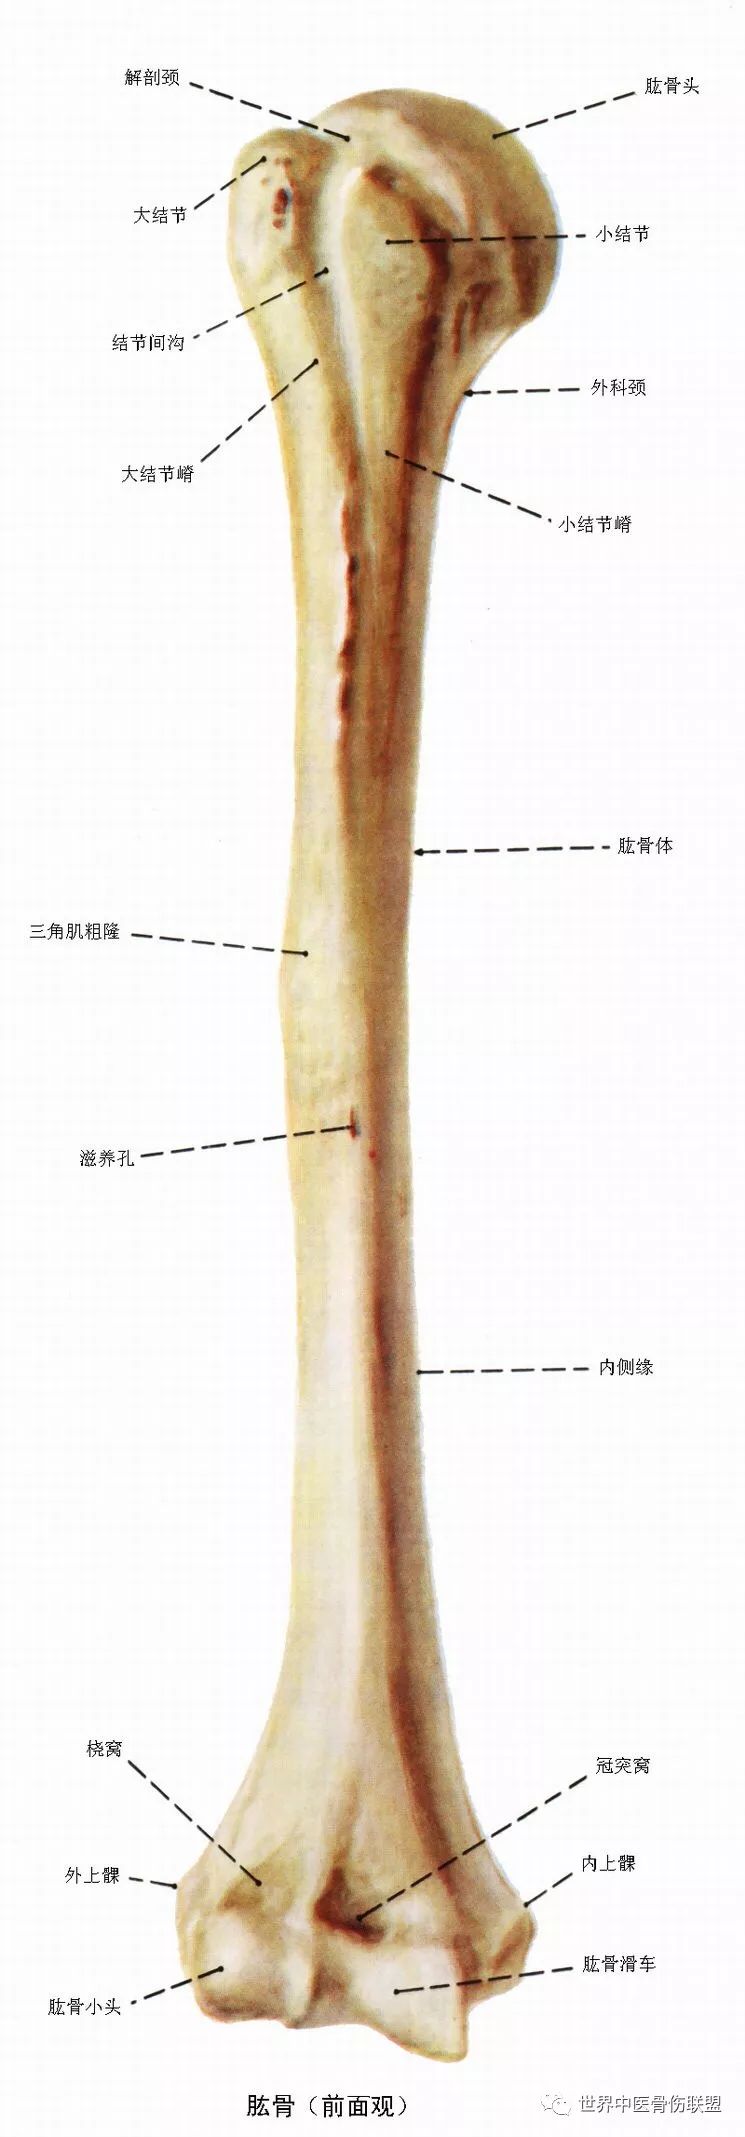 肱骨和肩胛骨:前面观,后面观【2】第12肋肋角距后正中线5cm处,对应第